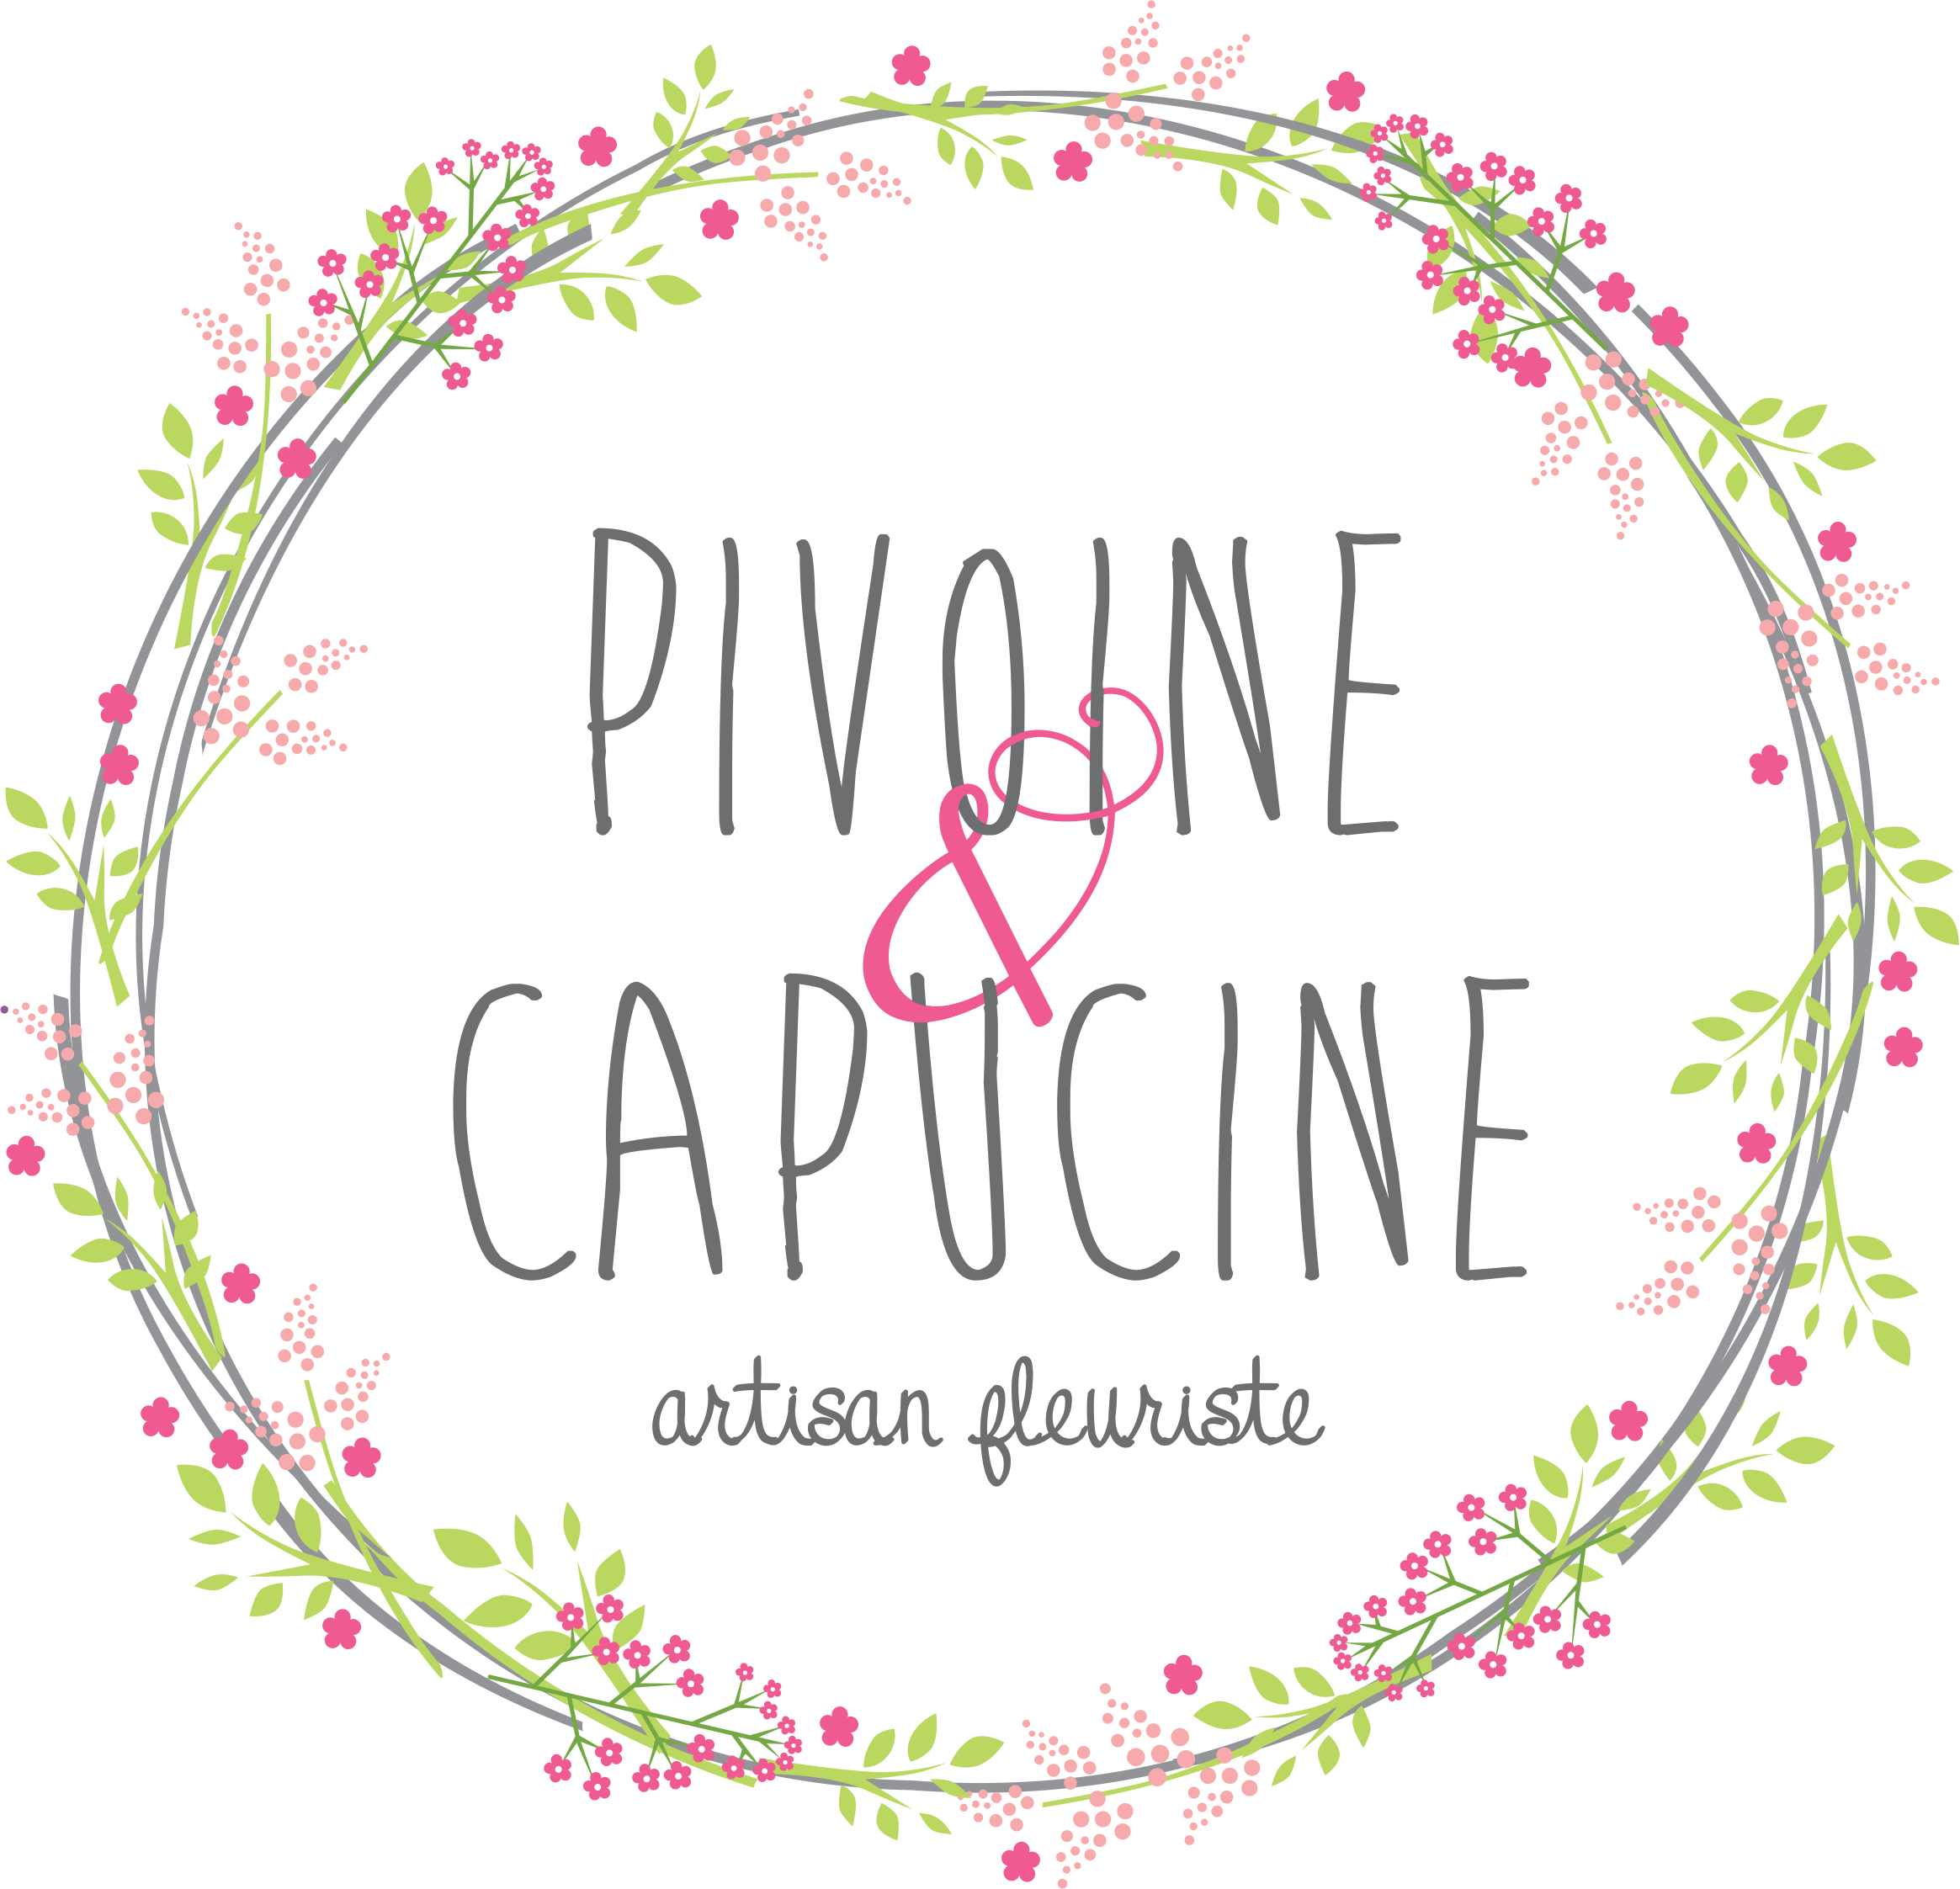 PIVOINE & CAPUCINE